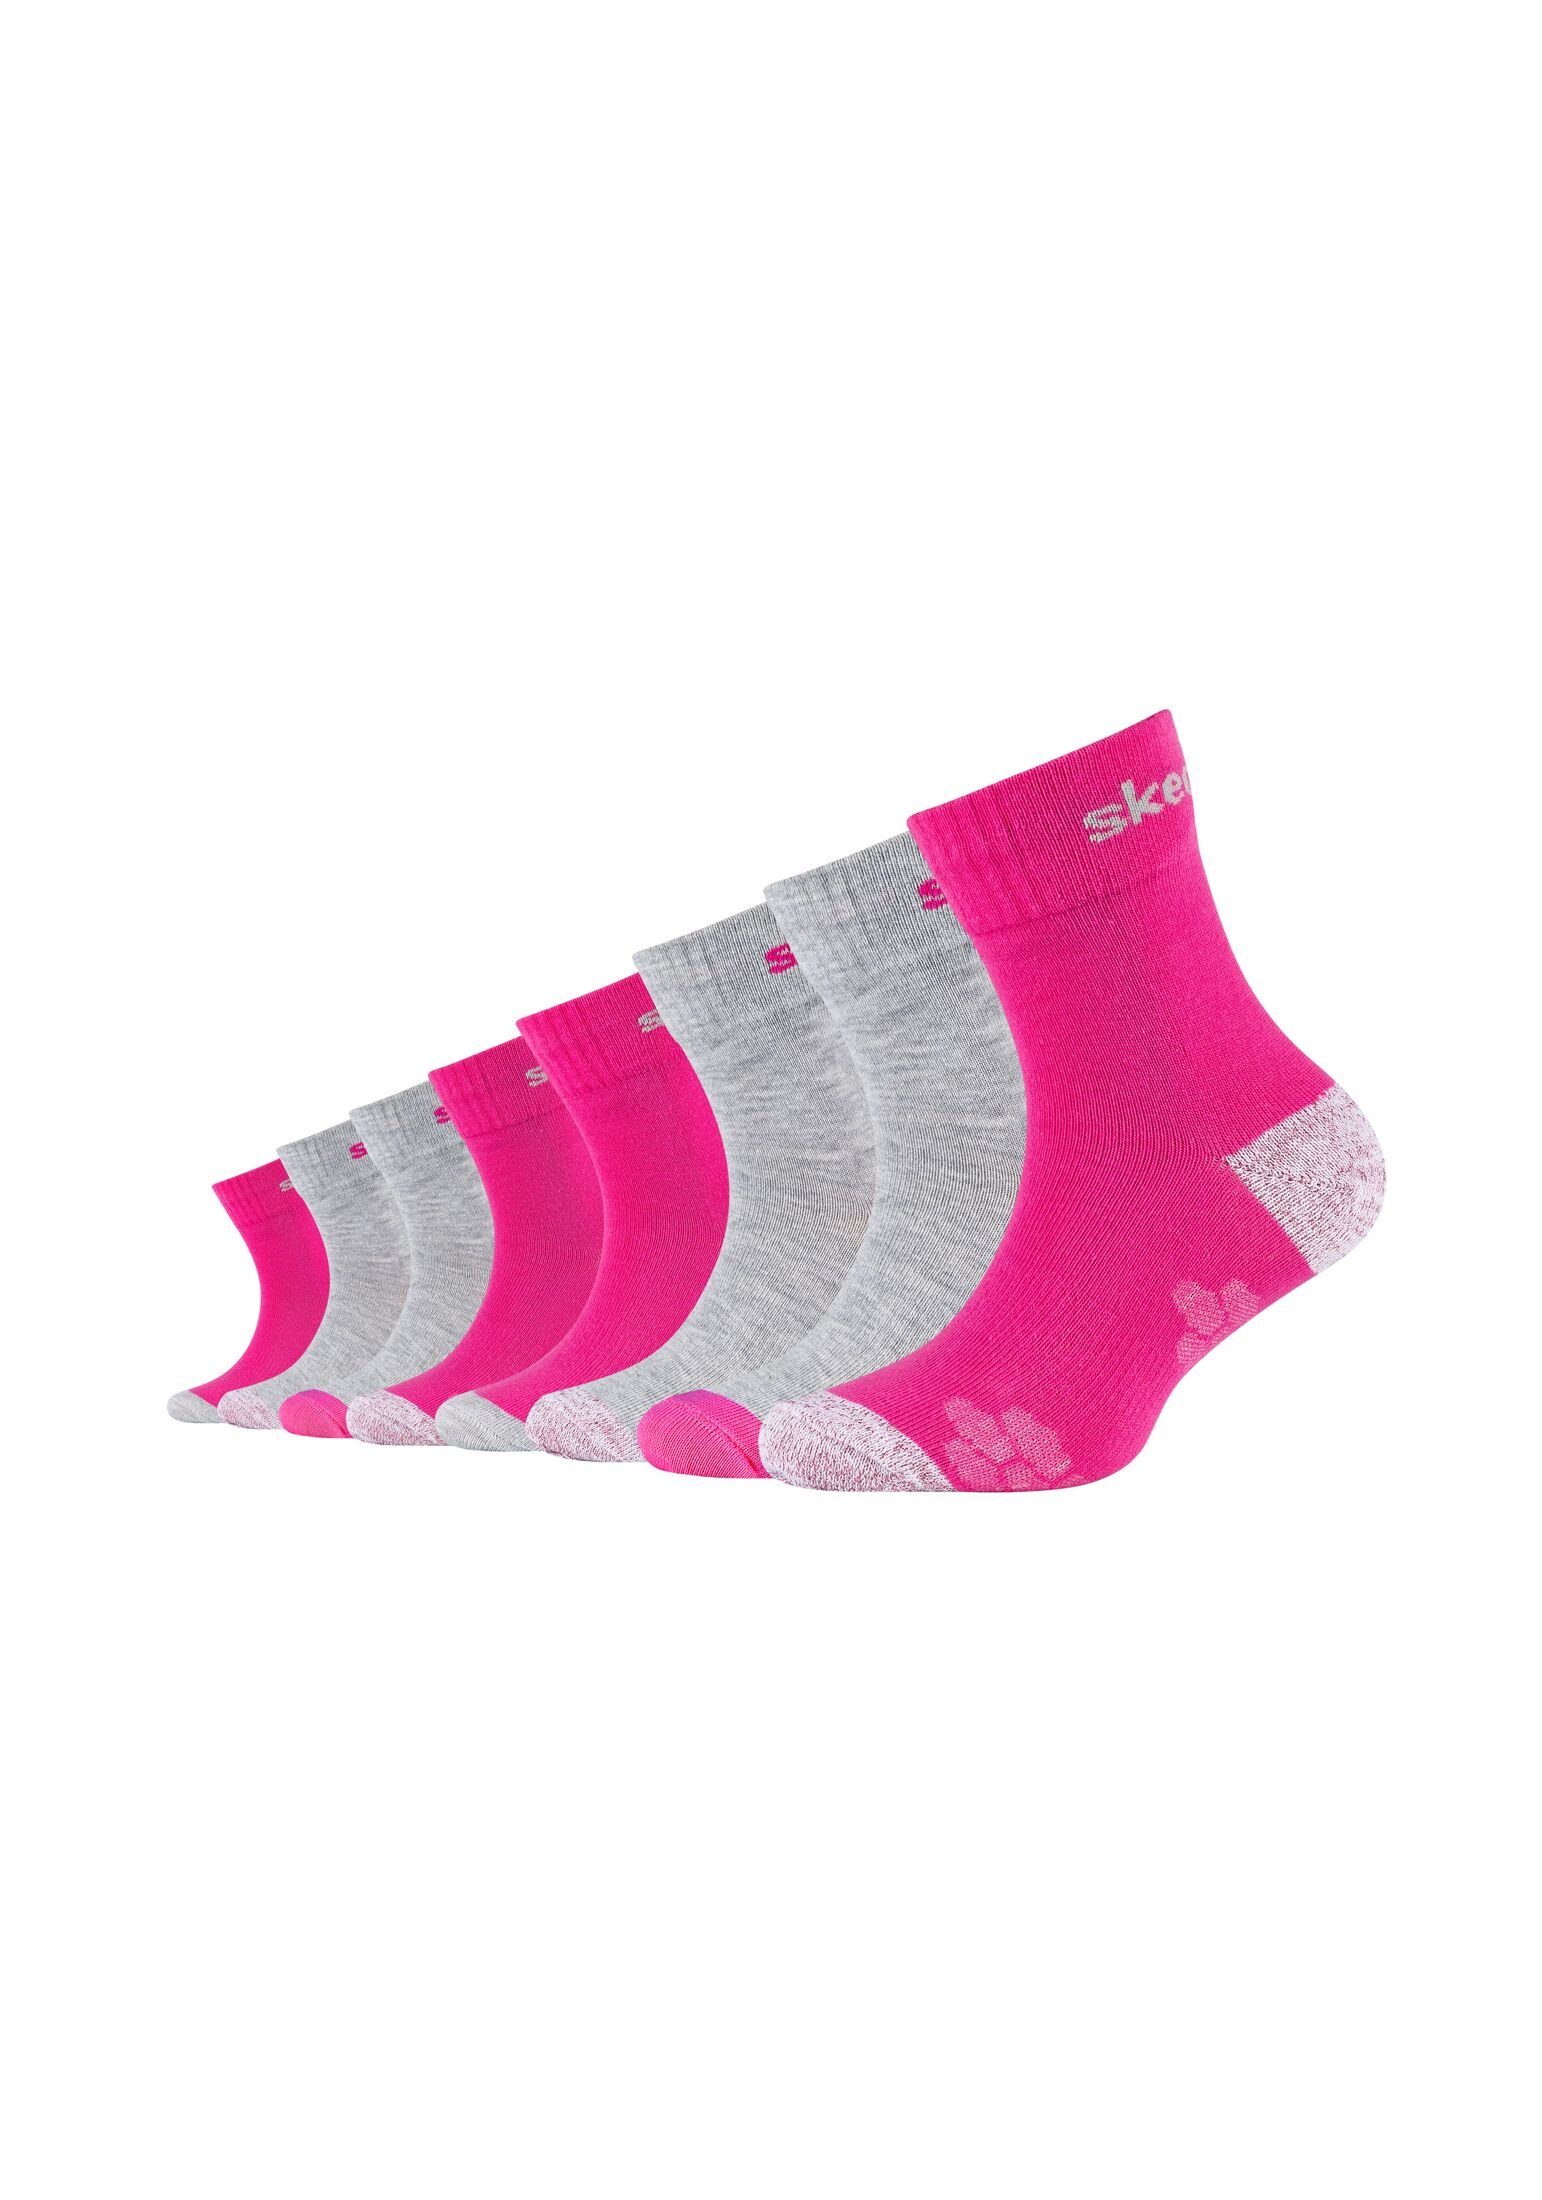 Skechers Socken Socken 8er Pack, Kindersocken mesh ventilation im 8er Pack  von Skechers